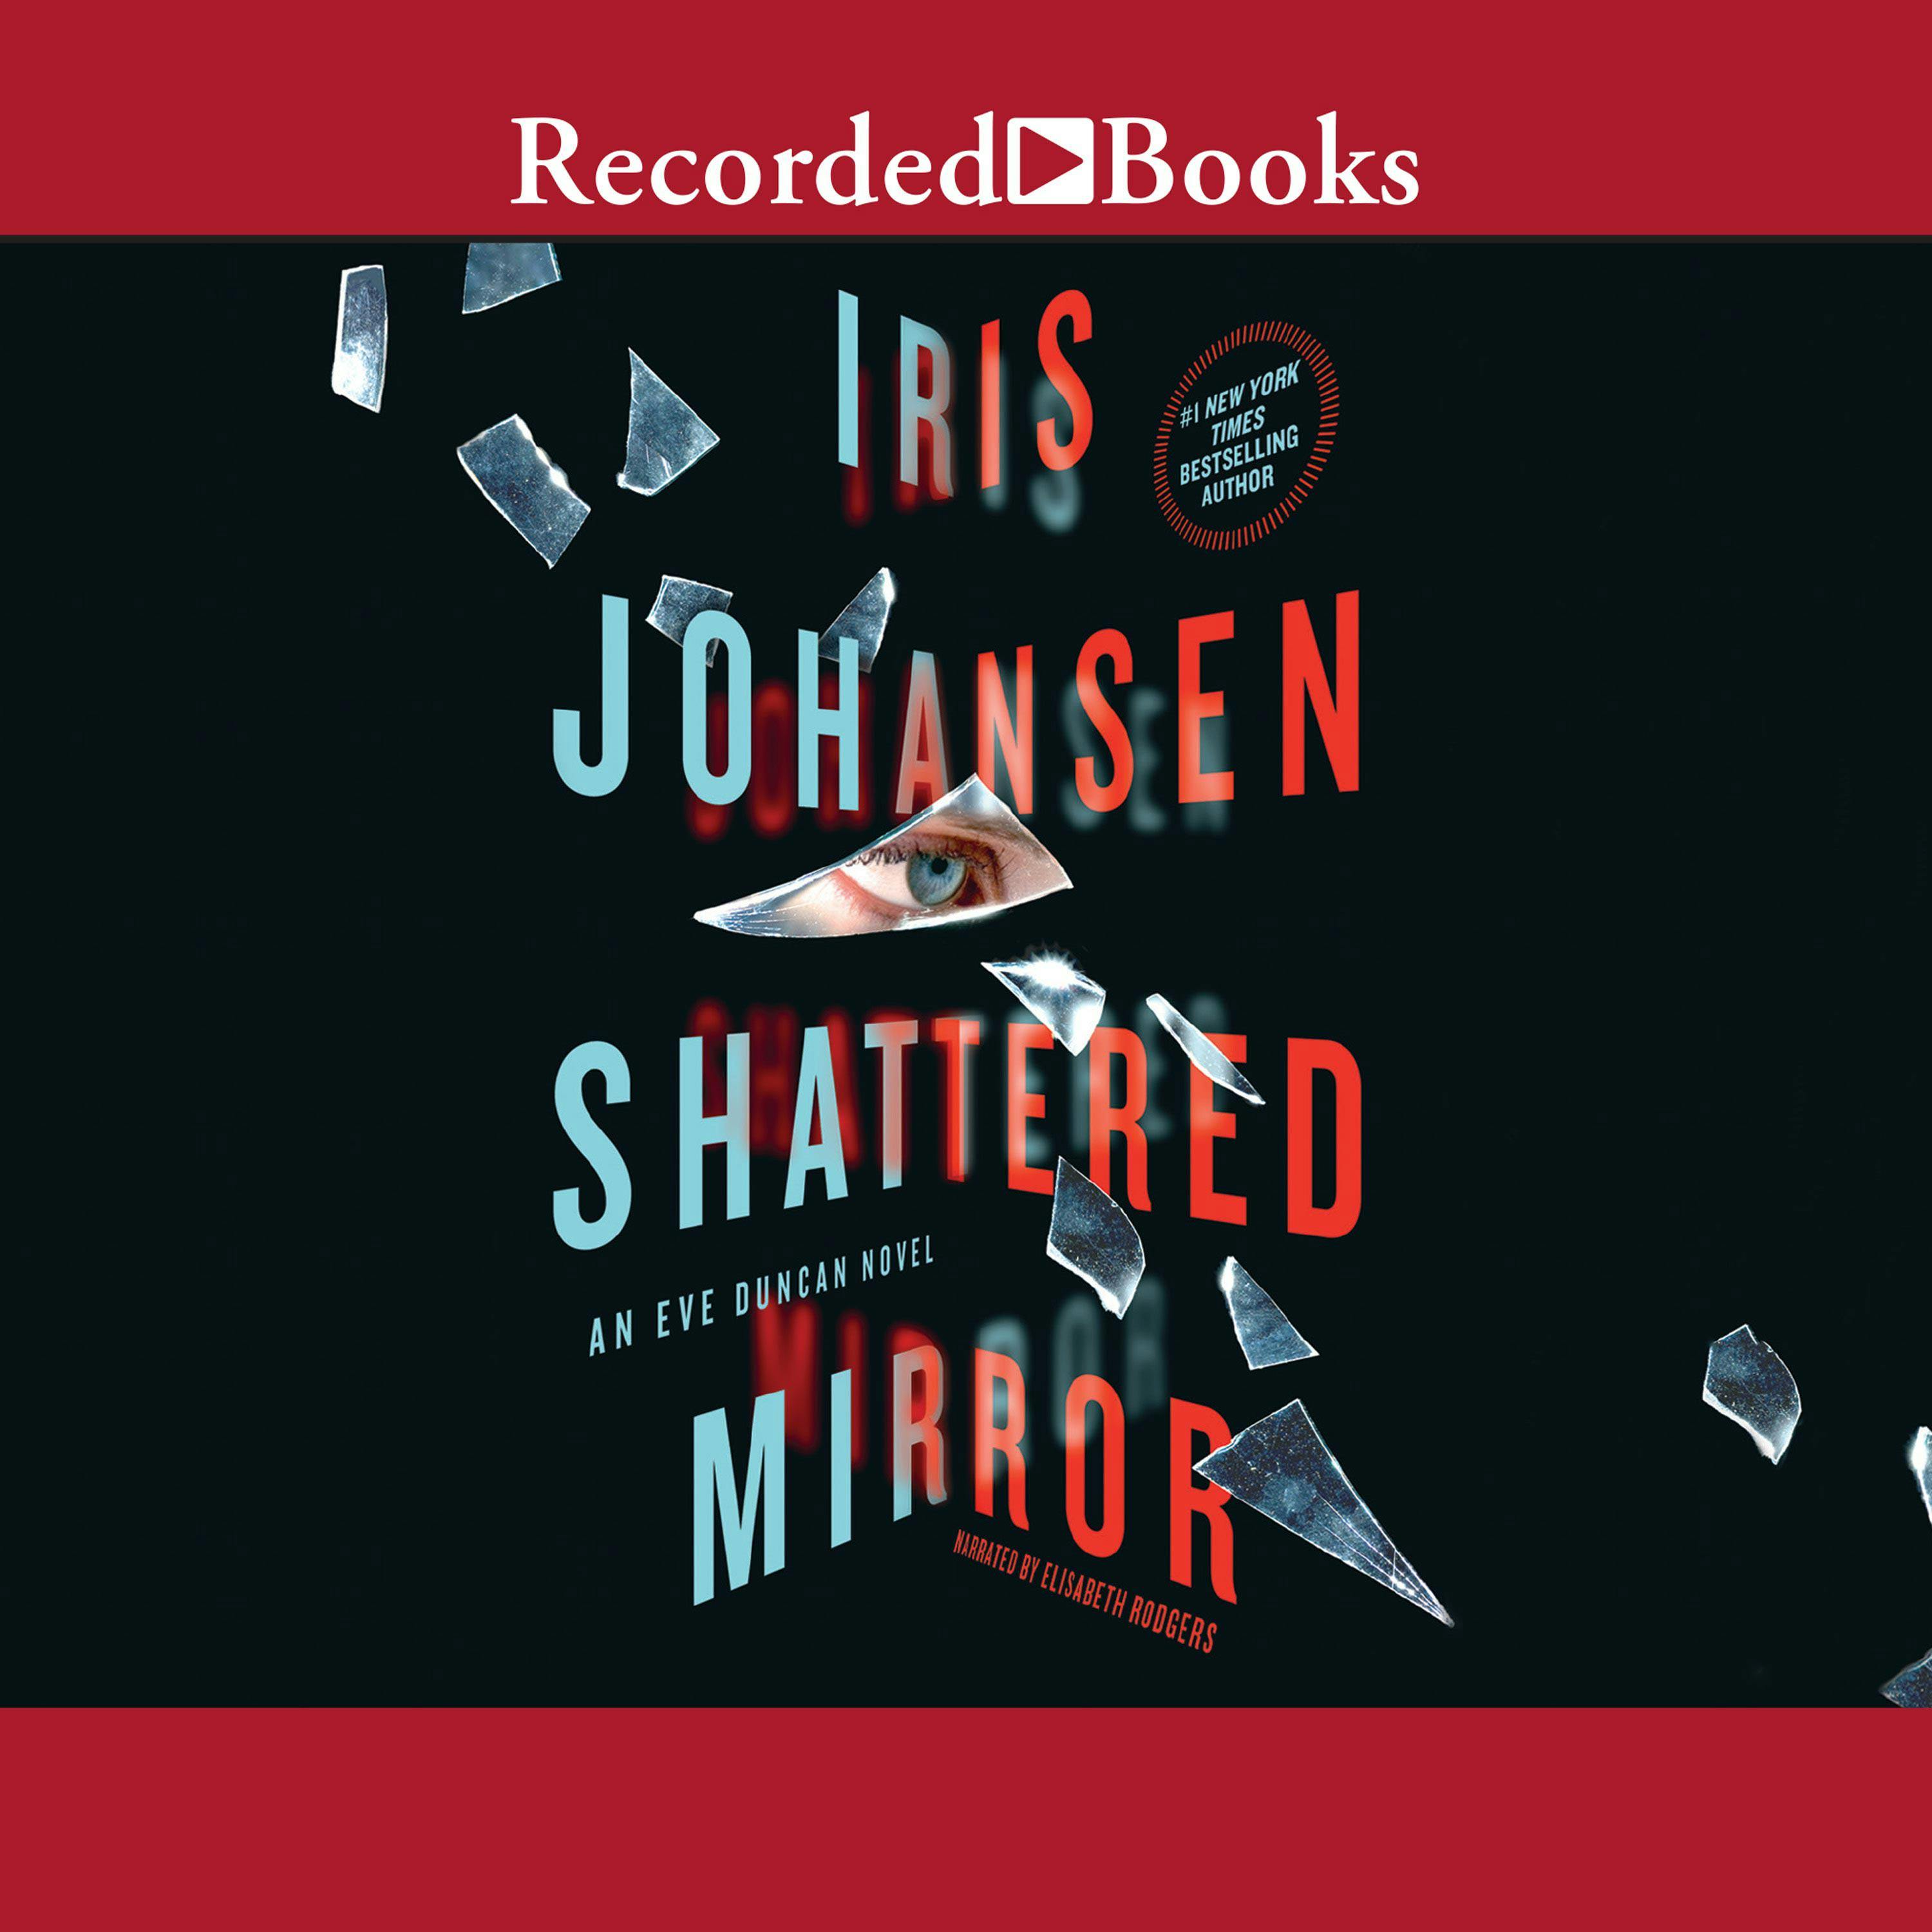 Shattered Mirror - Iris Johansen